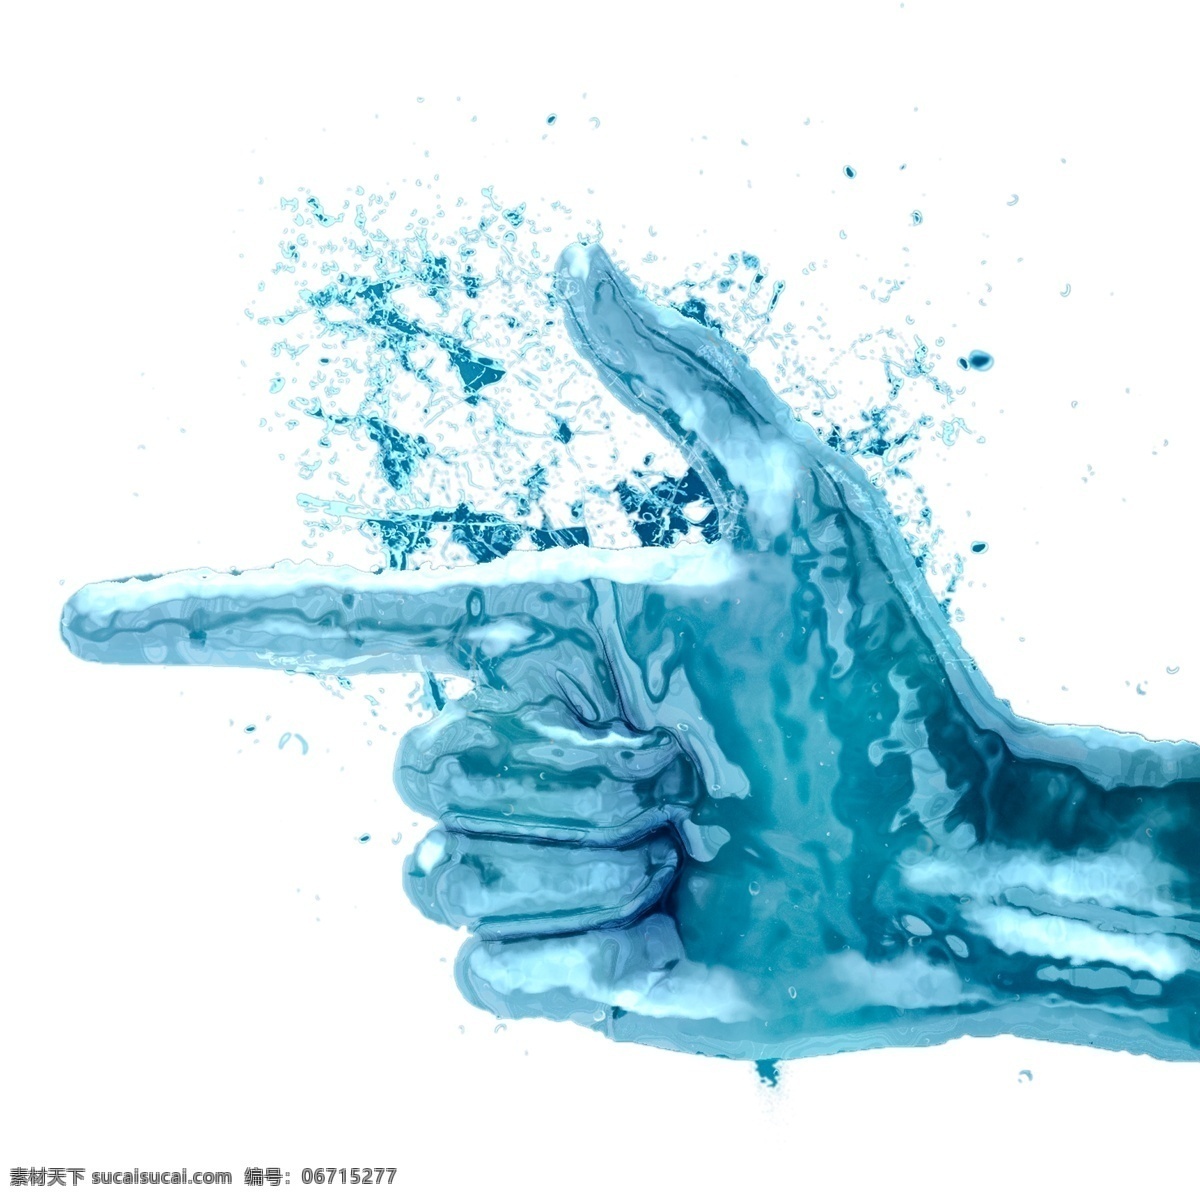 蓝色 液体 手指 指向 手势 效果图 液化 效果 蓝色冰块 液体手指 涟漪 泼水效果 蓝色液体 指向手势 手部动作